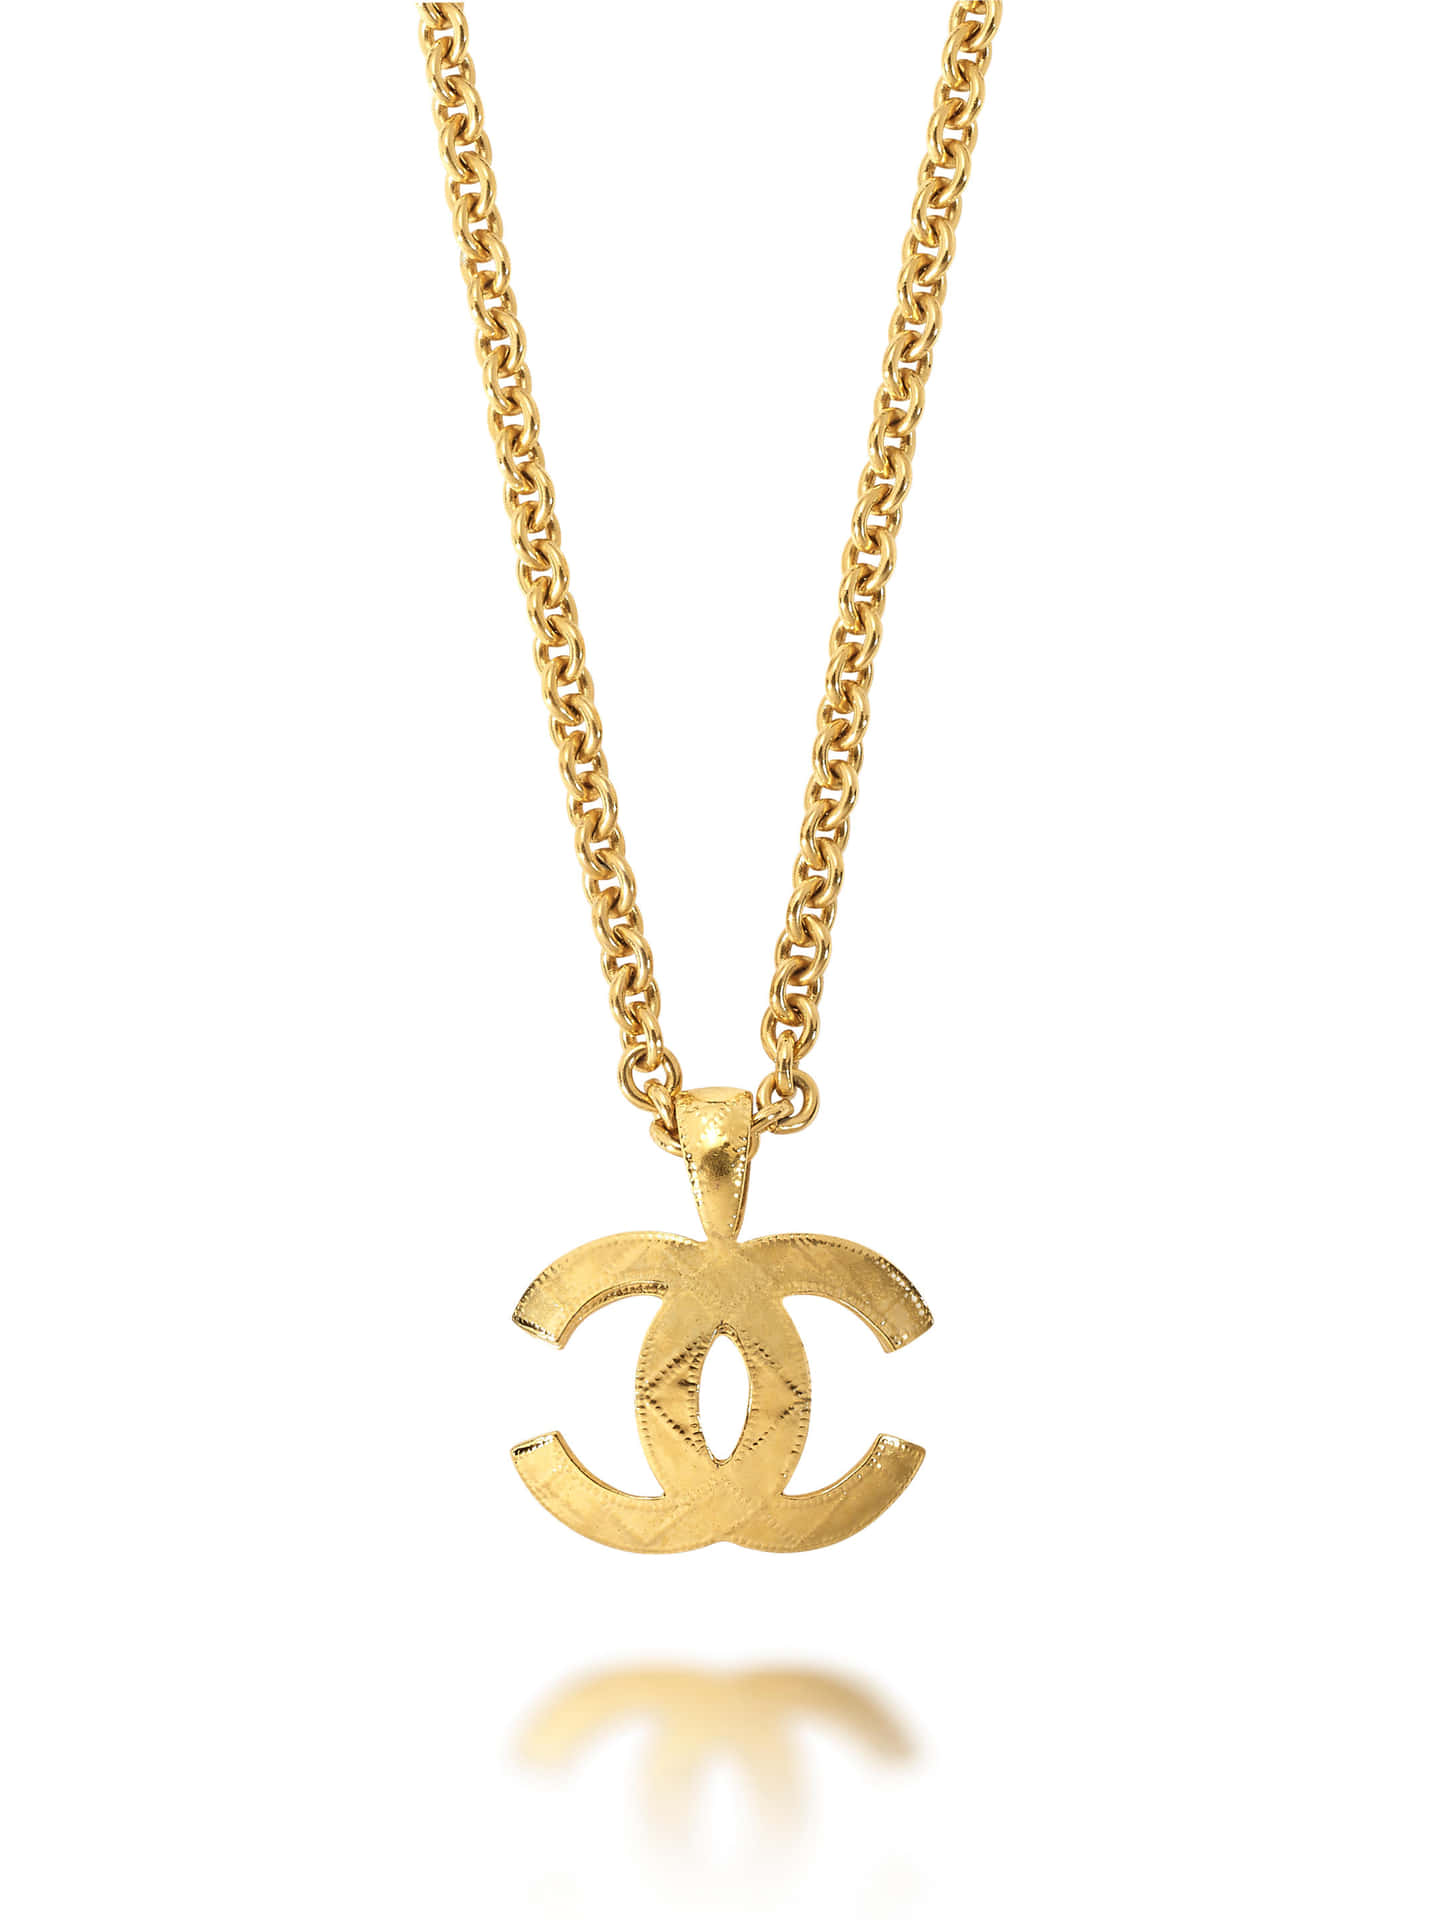 Chanellogo Icónico Or Chanel Logo Emblemático